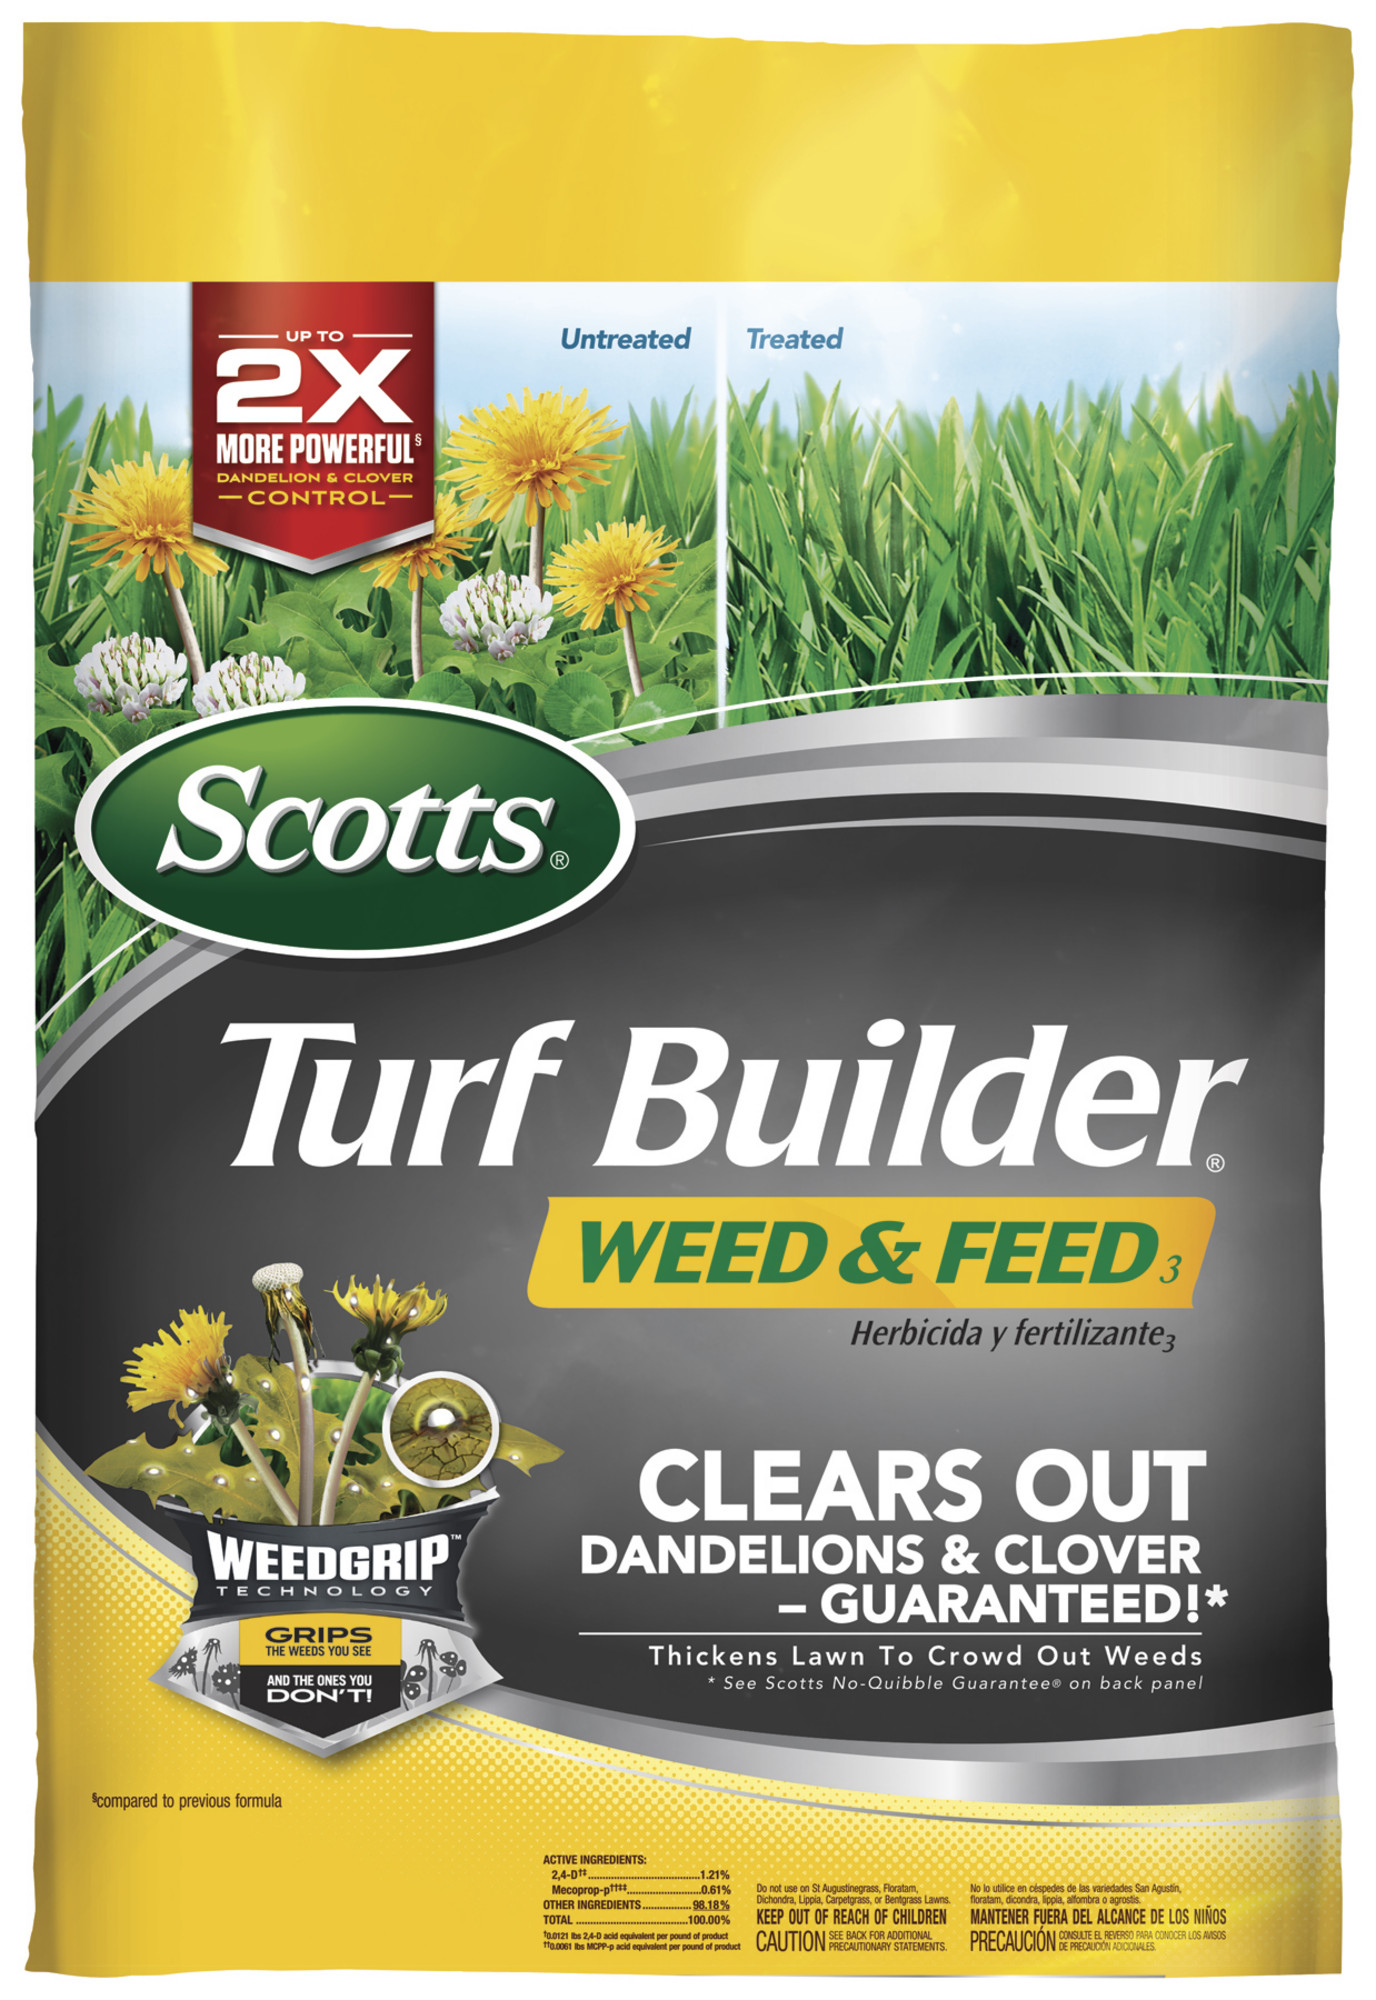 Scotts Turf Builder Weed Feed 3 Walmart Walmart